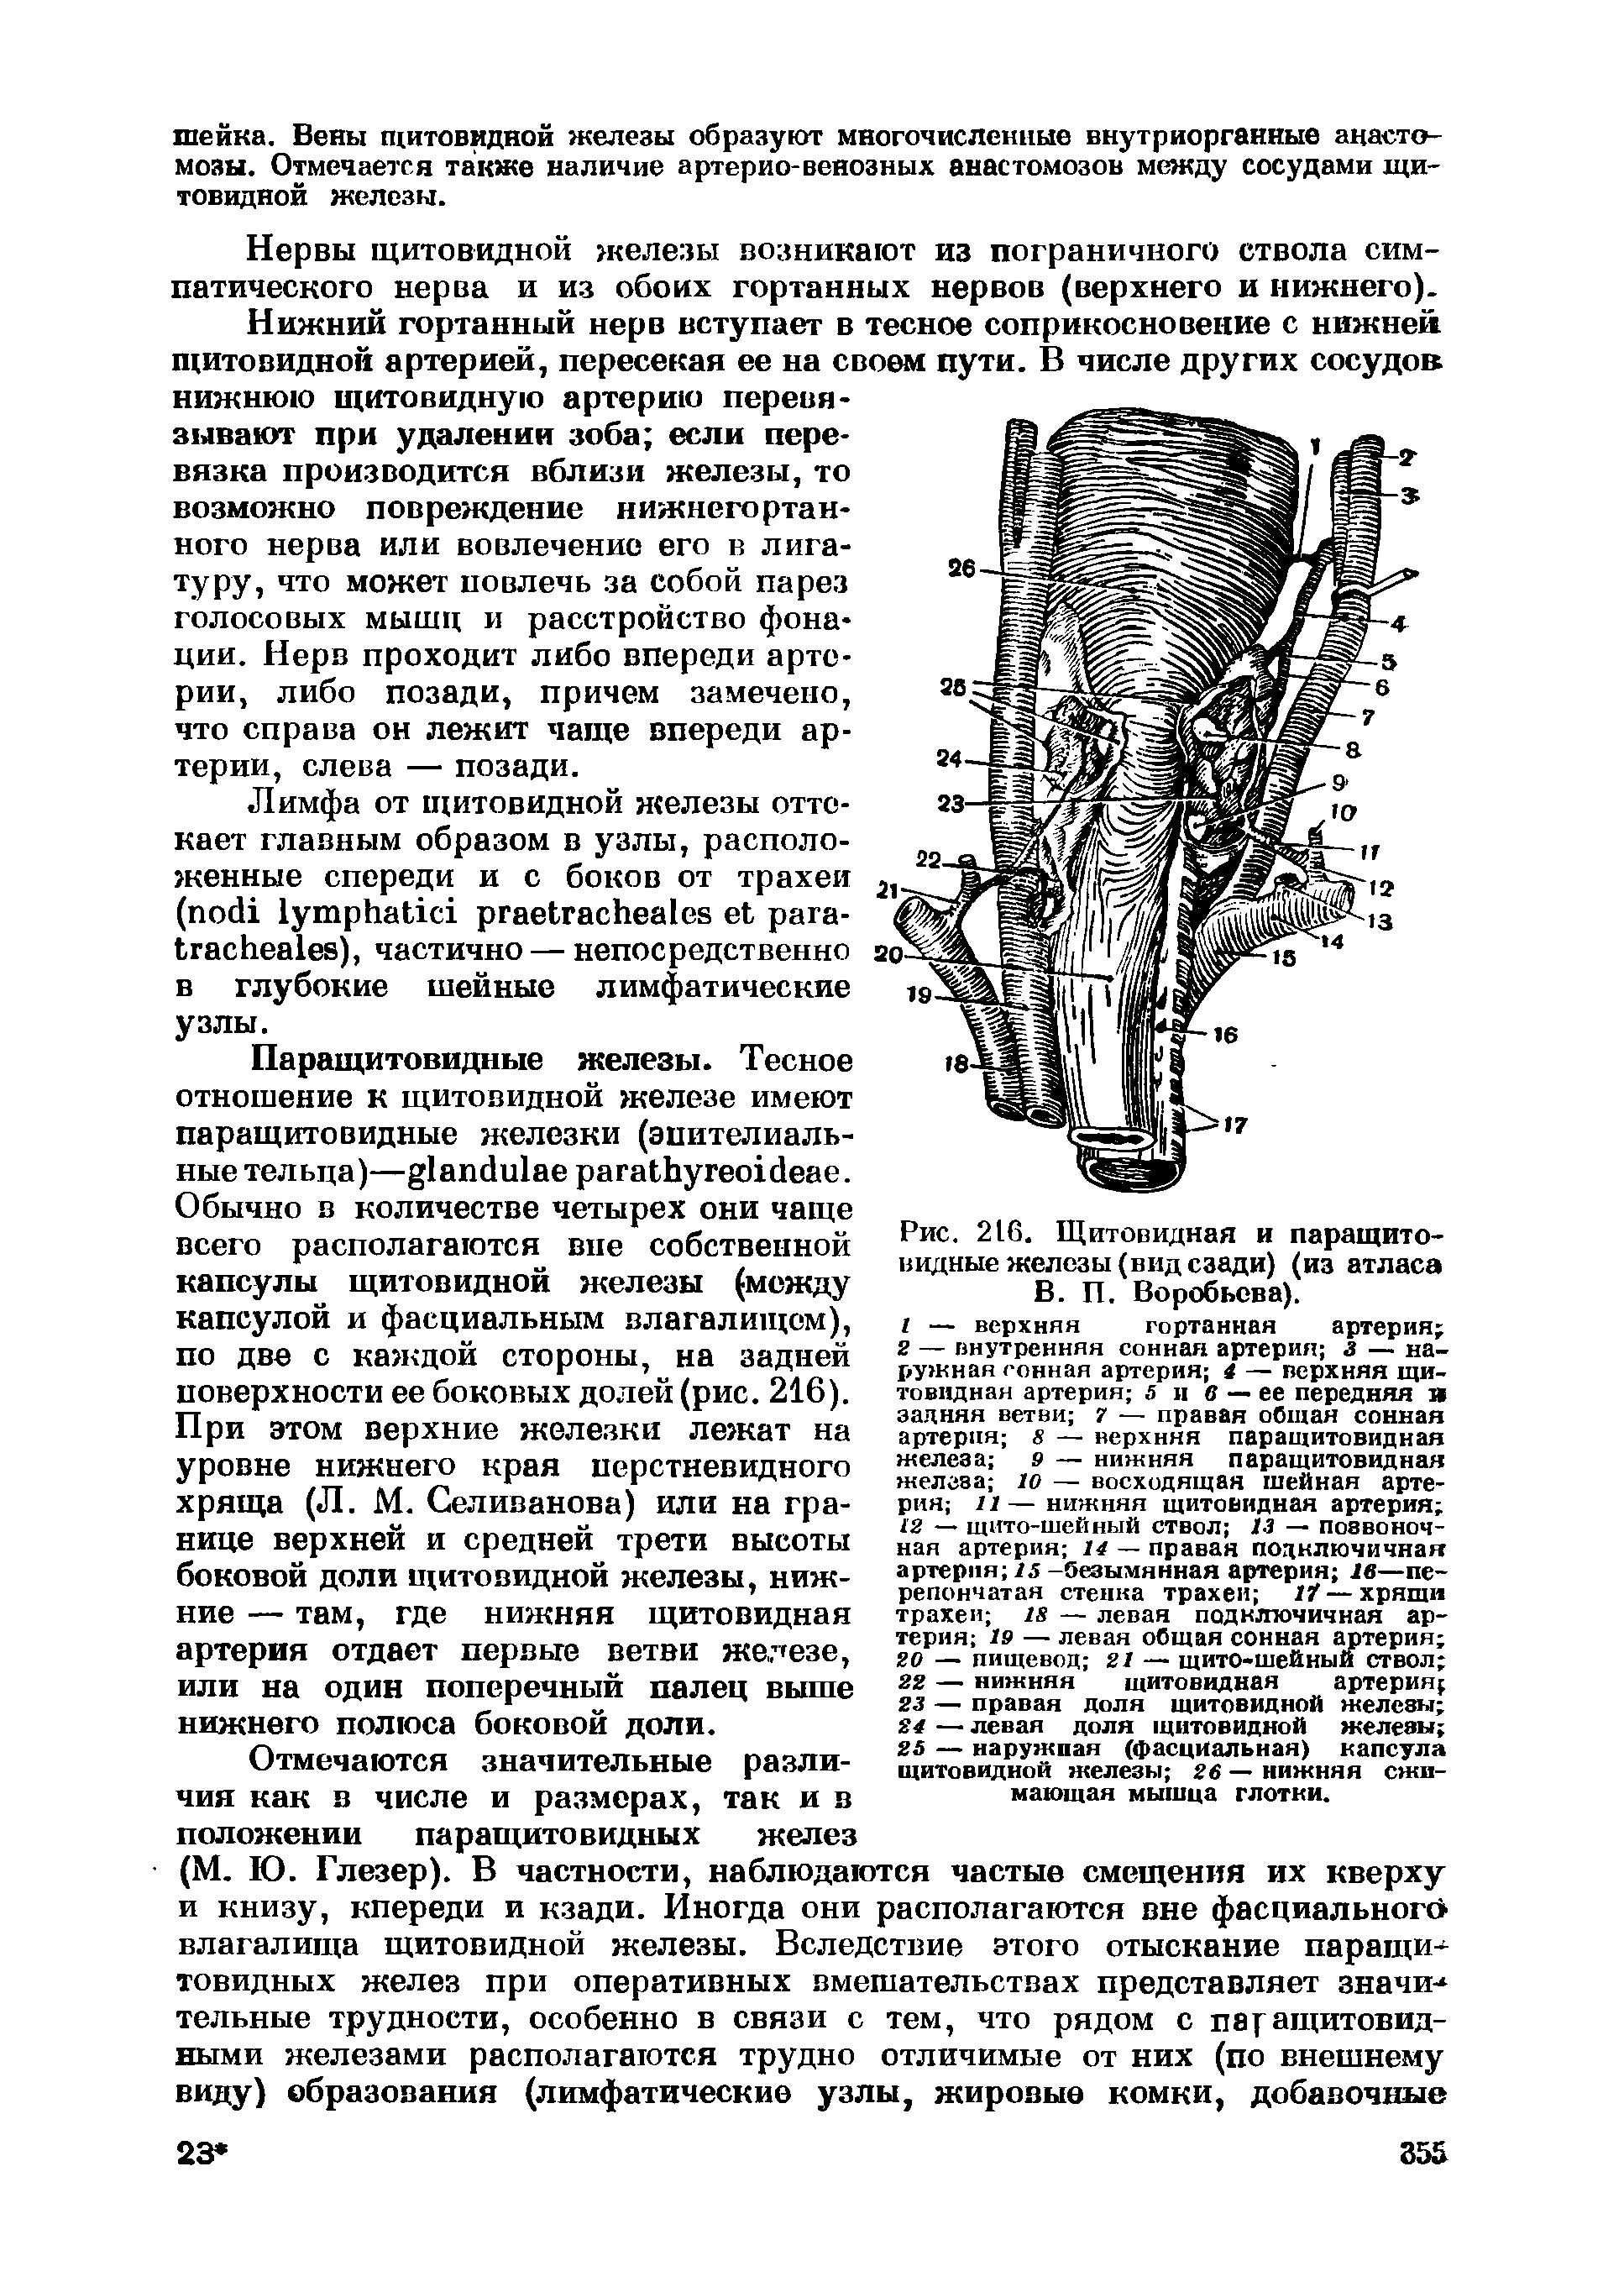 Рис. 216. Щитовидная и паращитовидные железы (вид сзади) (из атласа В. П. Воробьева).